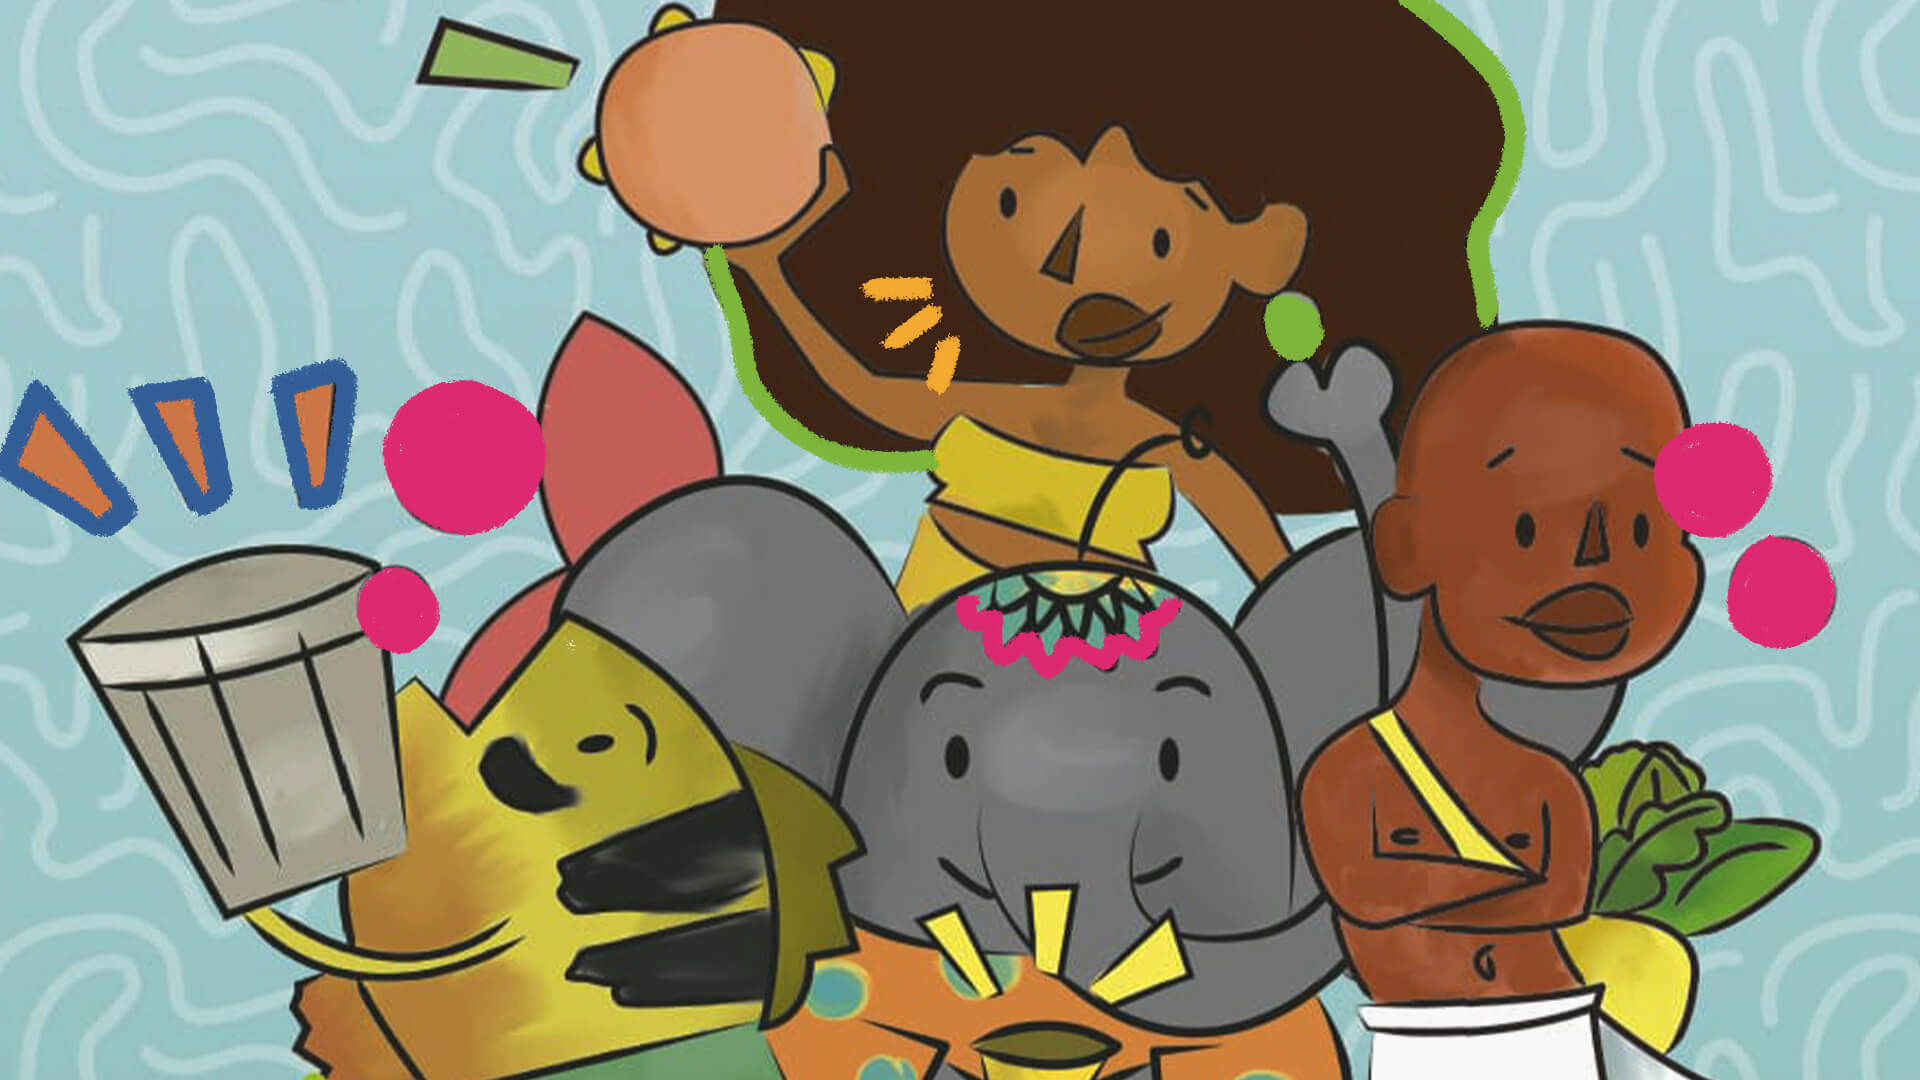 Na ilustração, um grupo formado por uma sereia negra, um menino negro, um peixe e um elefante seguram instrumentos musicais. A imagem possui intervenções de rabiscos coloridos.